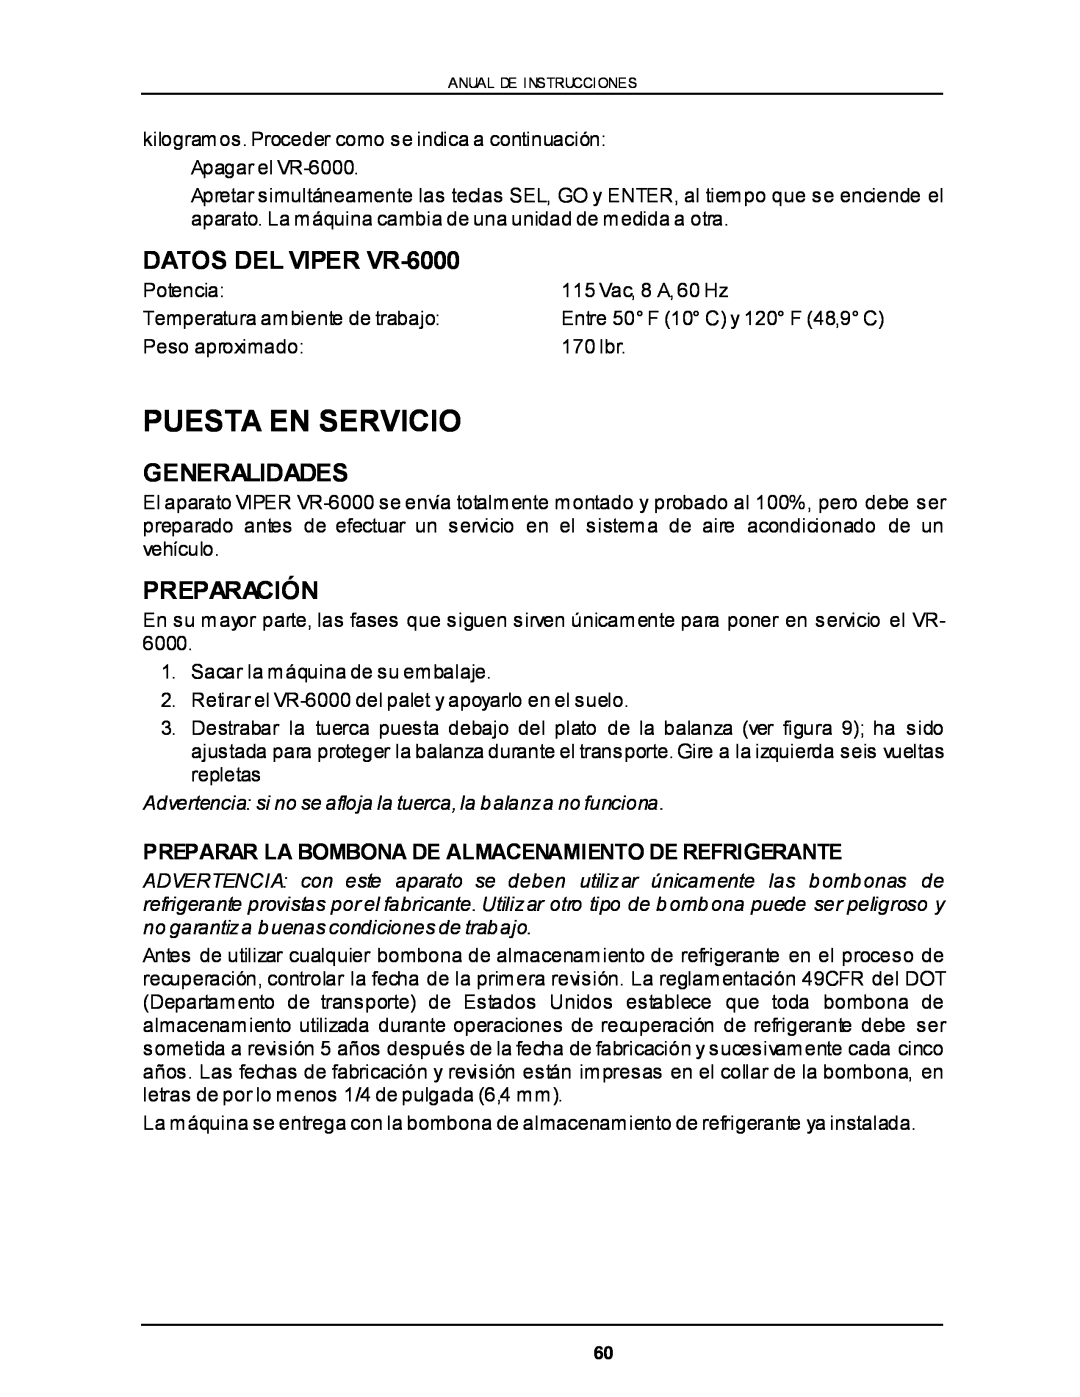 Viper owner manual Puesta En Servicio, DATOS DEL VIPER VR-6000, Preparación, Generalidades 